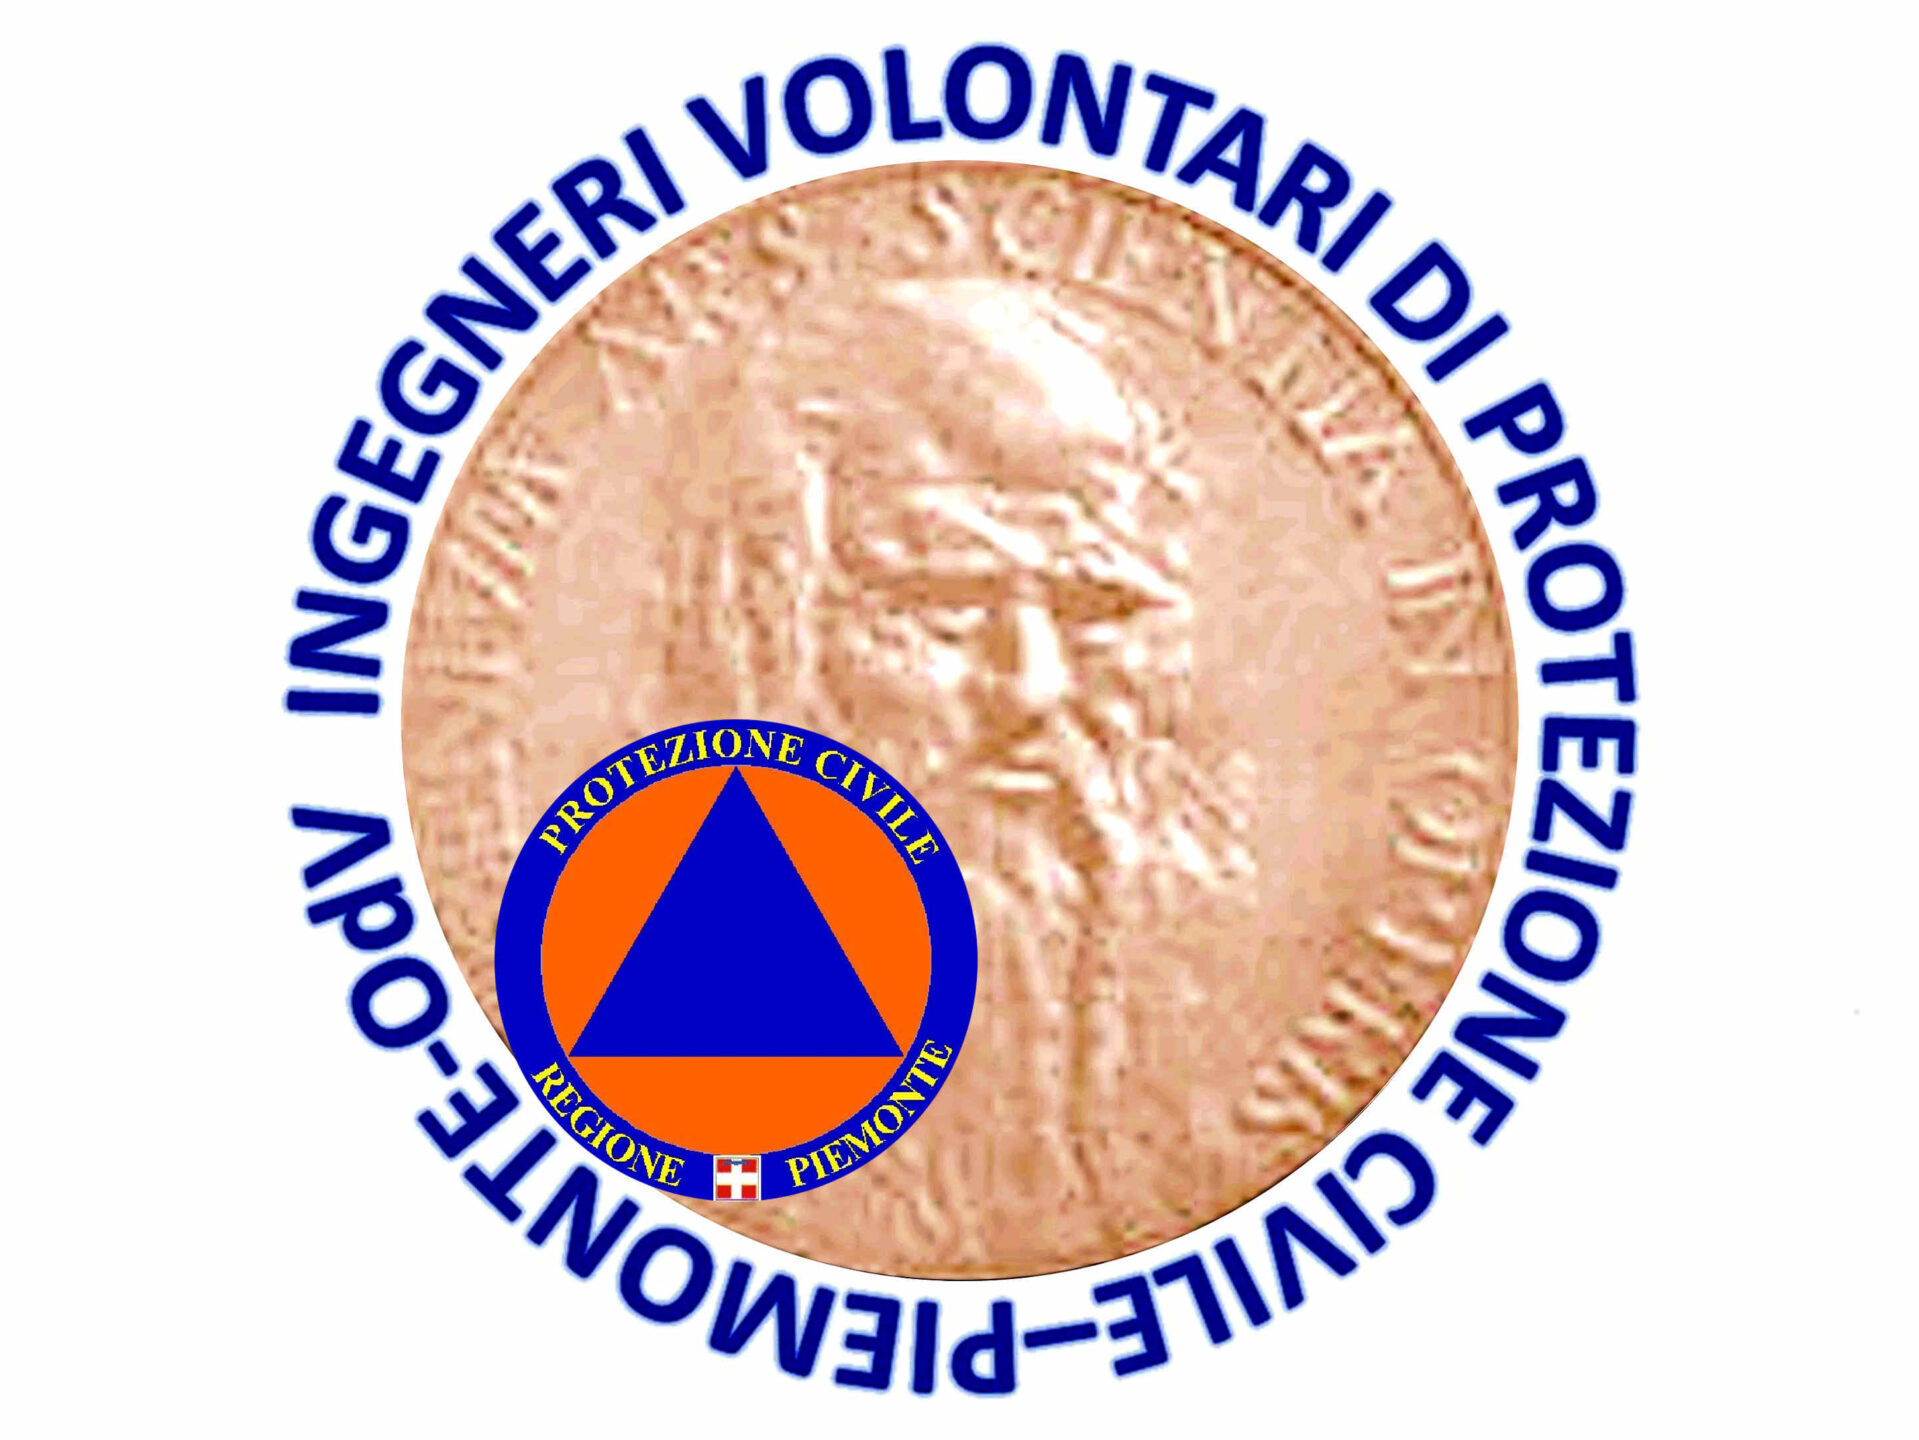 Ingegneri Volontari di Protezione Civile Piemonte OdV